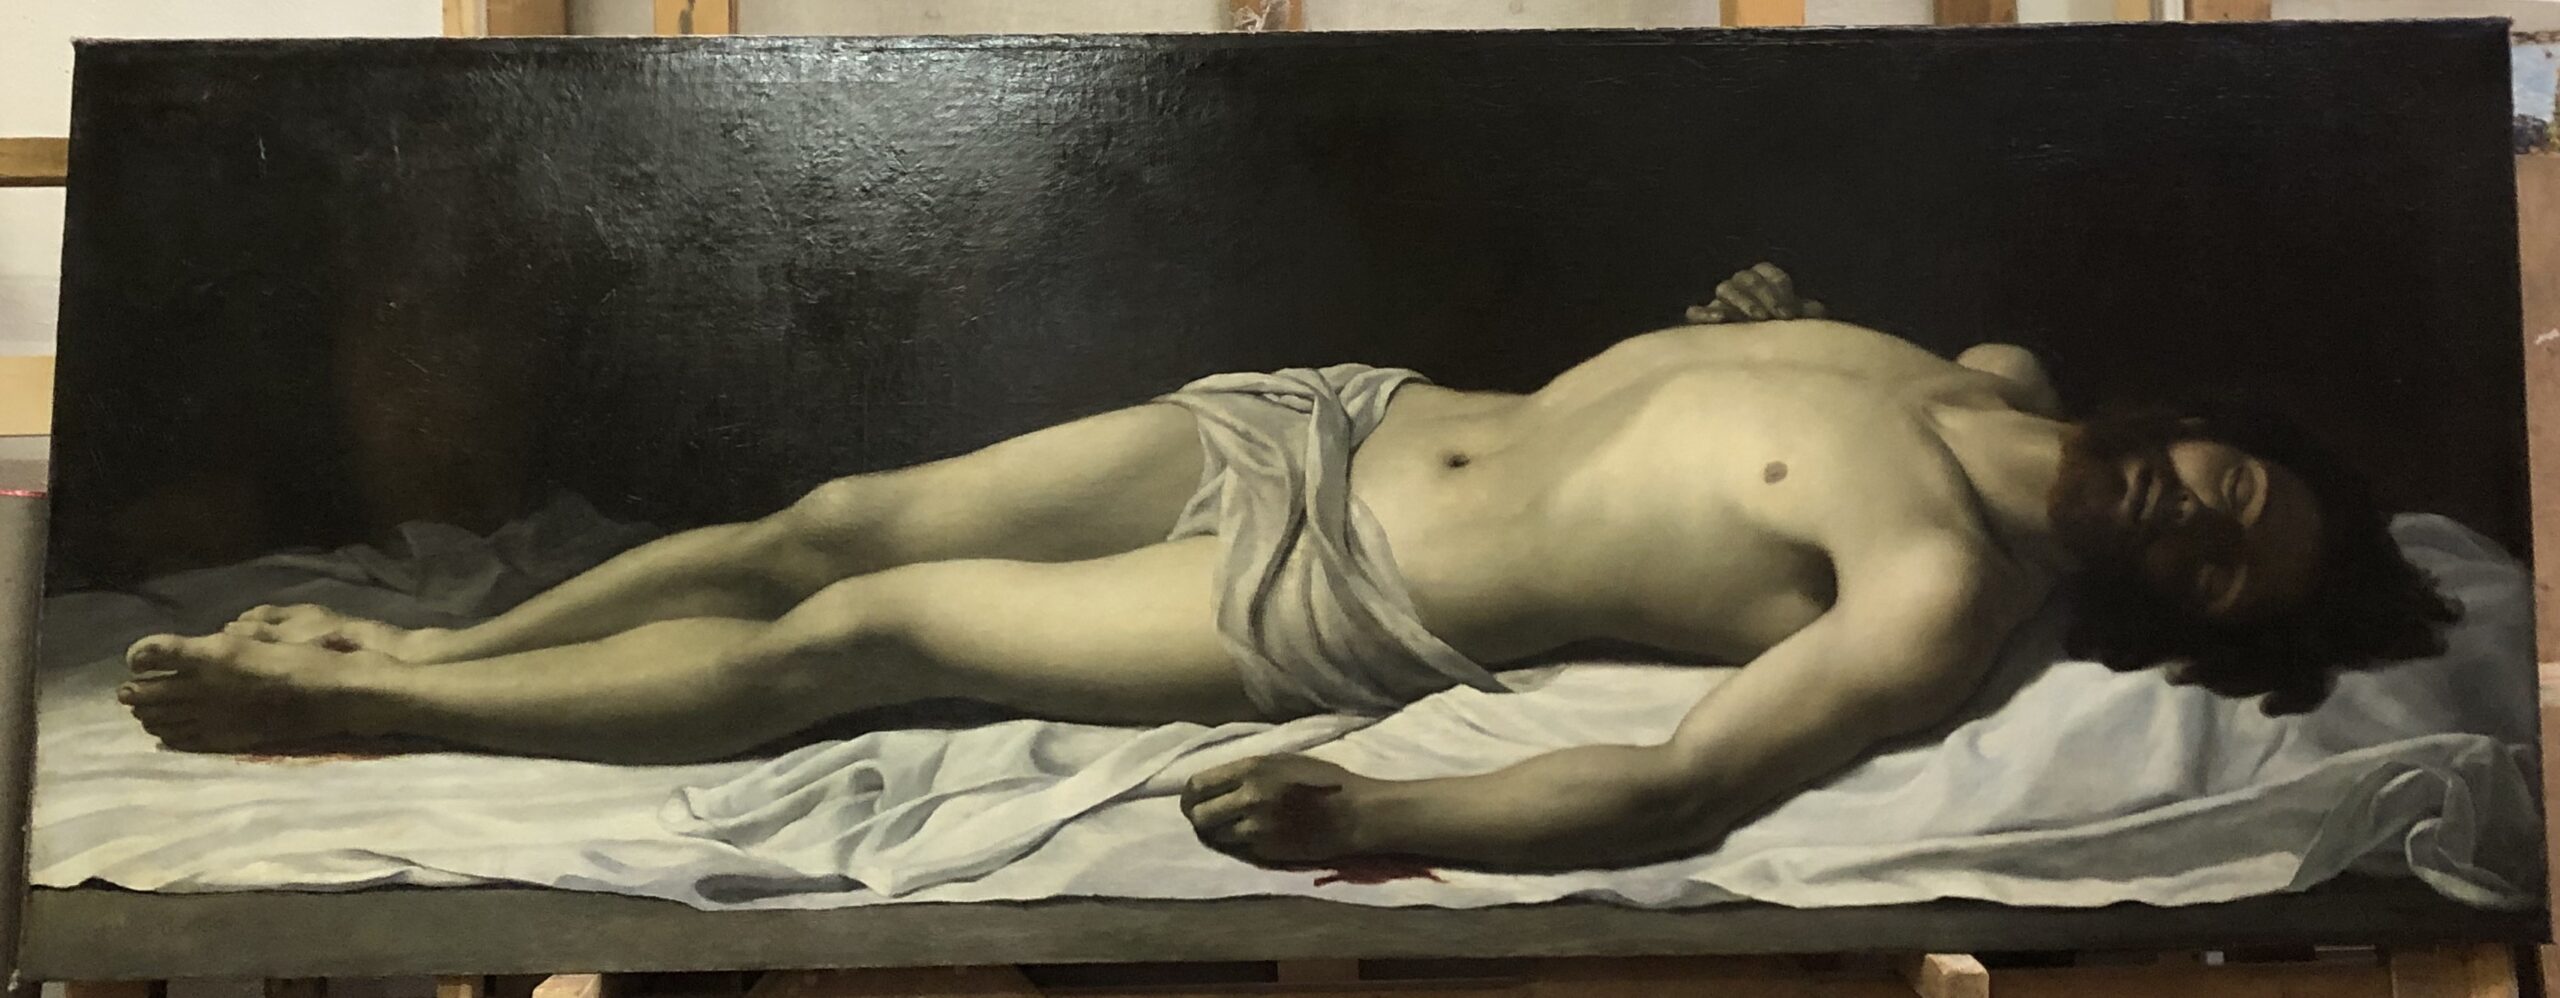 Léon Horsin-Déon (1847-1891), Christ mort ou Jésus-Christ dans le sépulcre, c. 1873, huile sur toile, 198 x 72 cm, musée d’Histoire locale de Rueil-Malmaison